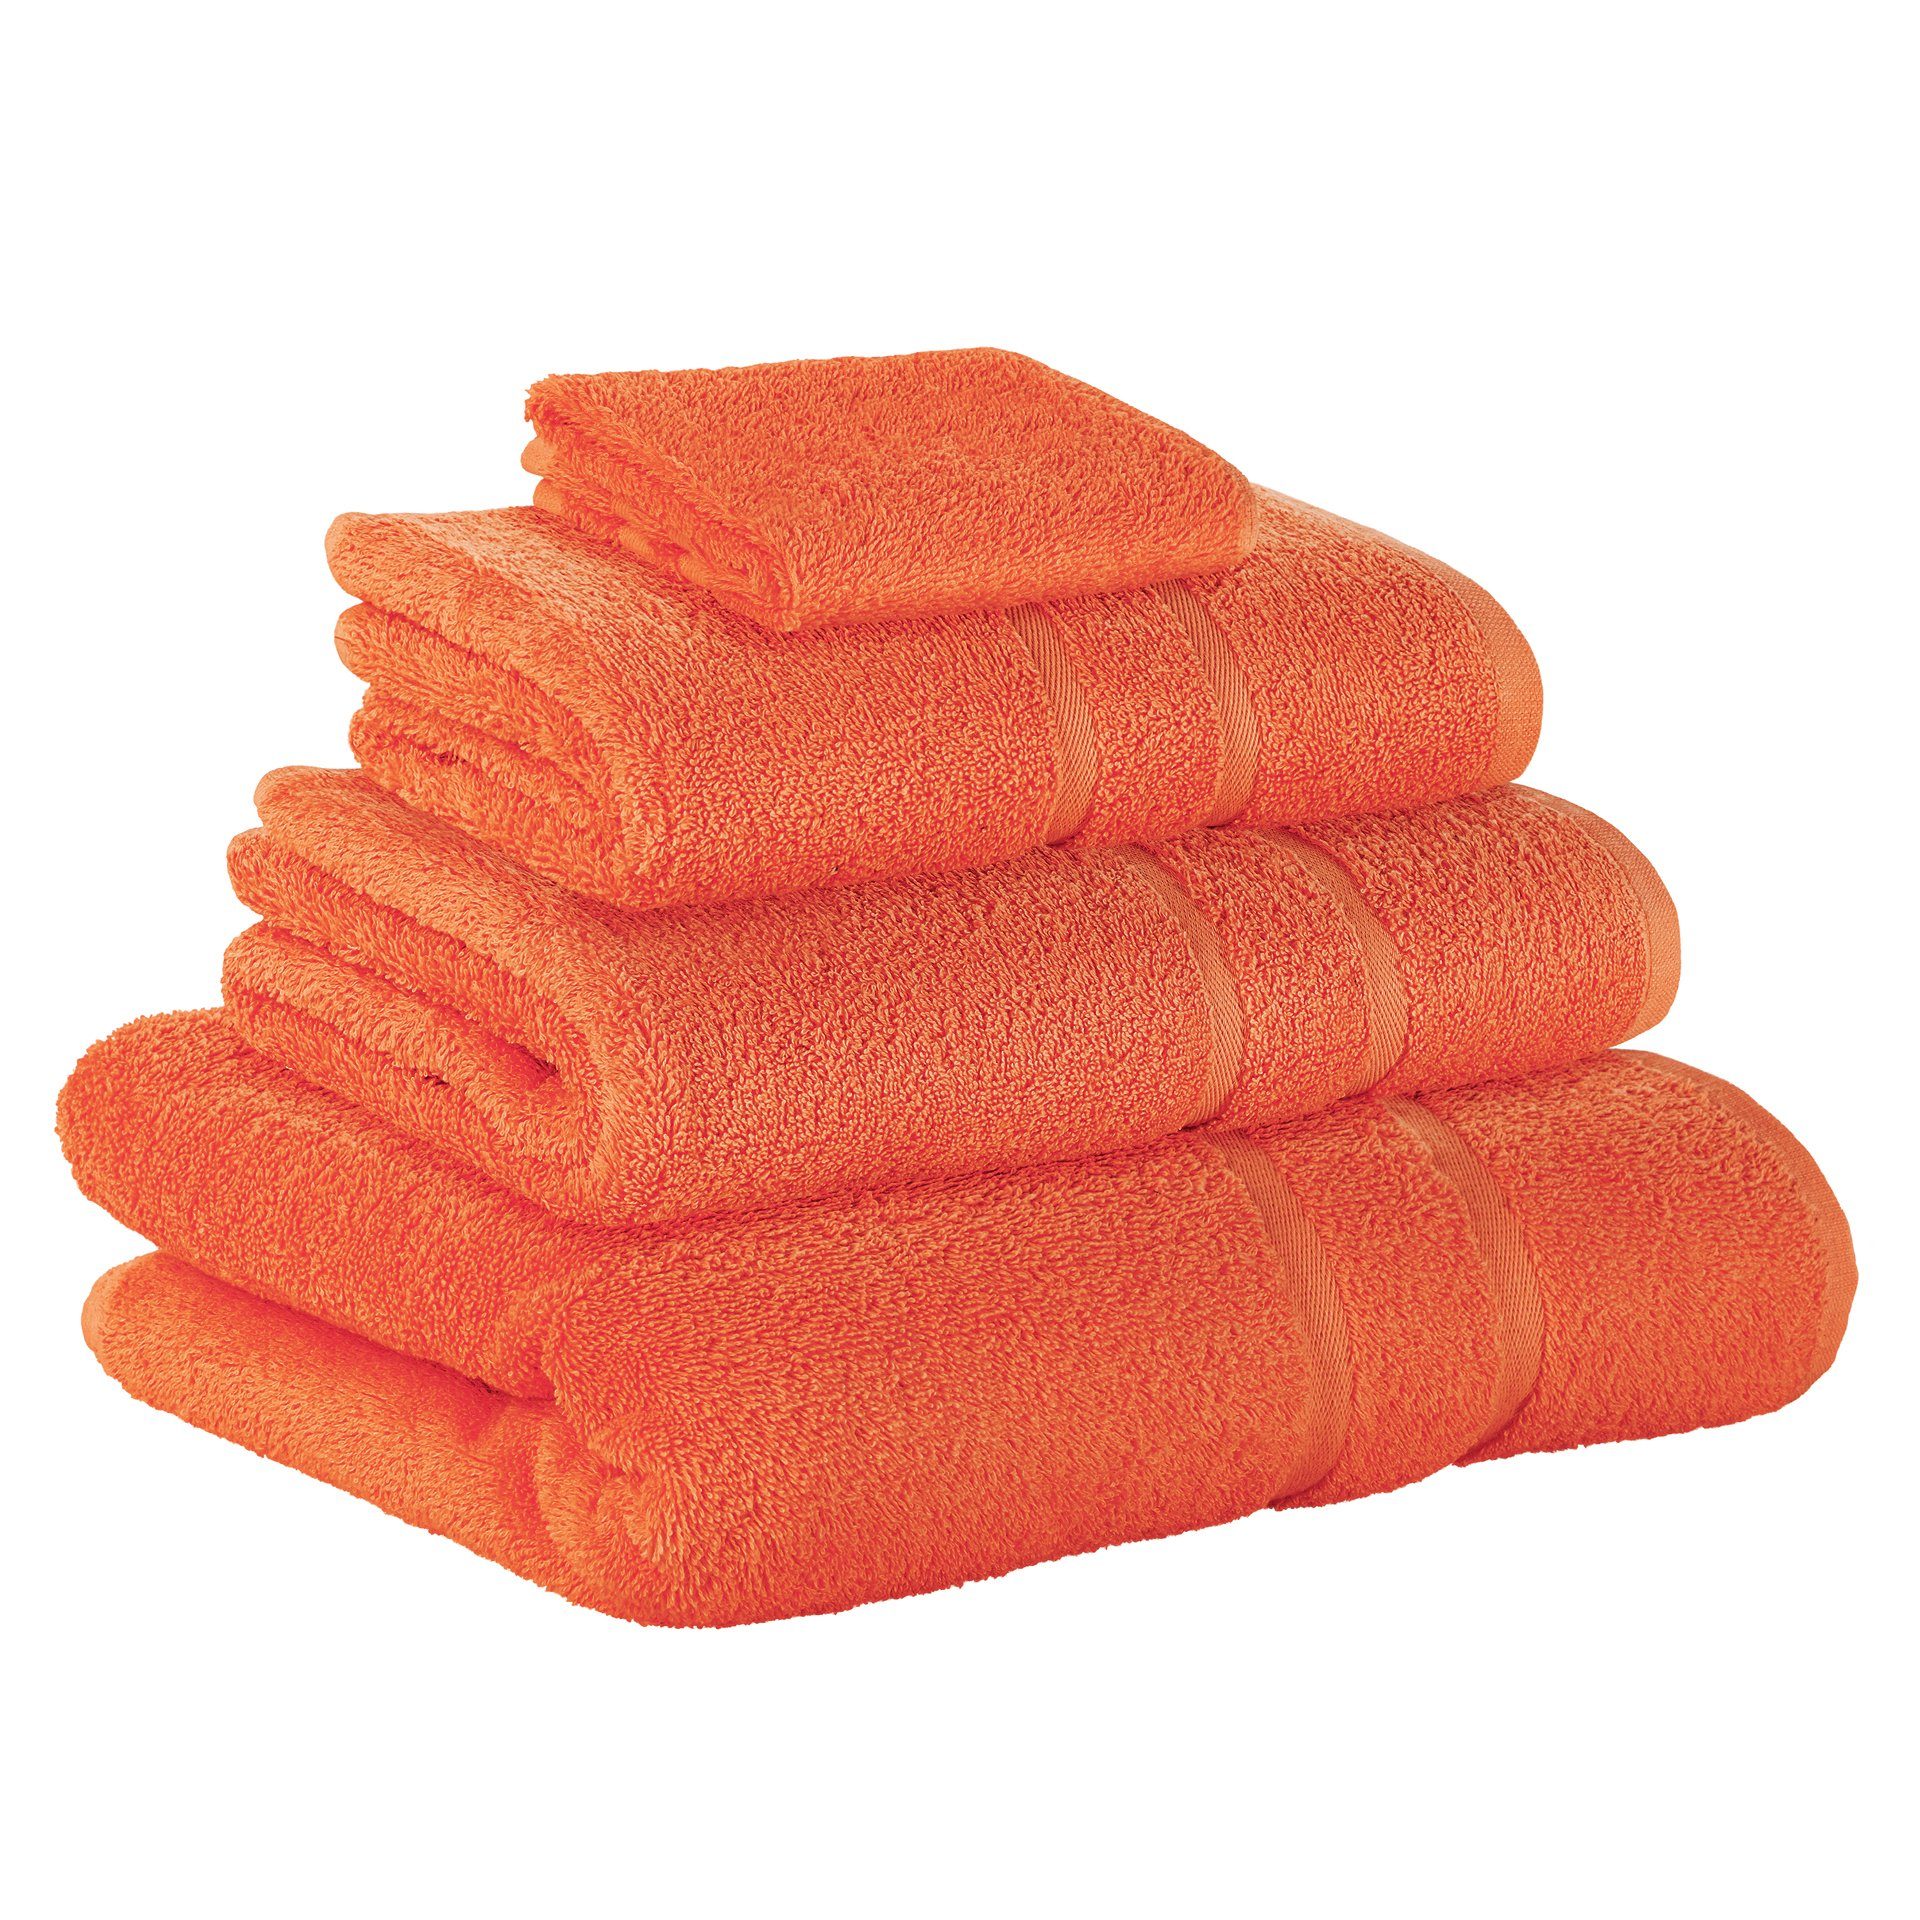 StickandShine Handtuch Set 1x Gästehandtuch 1x Handtuch 1x Duschtuch 1x Badetuch als SET in verschiedenen Farben (4 Teilig) 100% Baumwolle 500 GSM Frottee 4er Handtuch Pack, 100% Baumwolle 500 GSM Orange | Handtuch-Sets